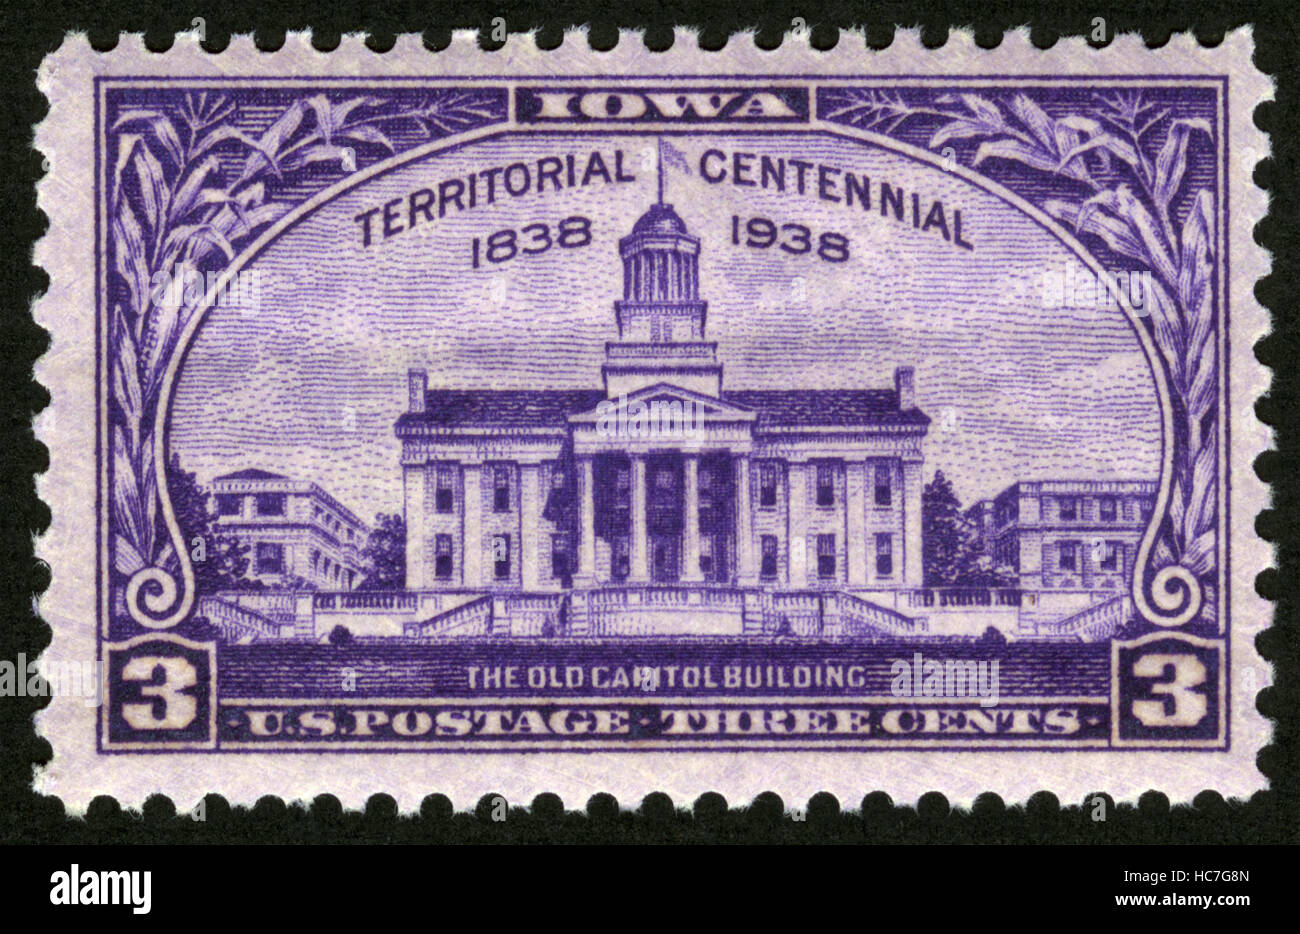 US,vers 1938, timbre-poste, territoriaux, du centenaire 1838-1938, l'ancien  bâtiment de Capitol Photo Stock - Alamy